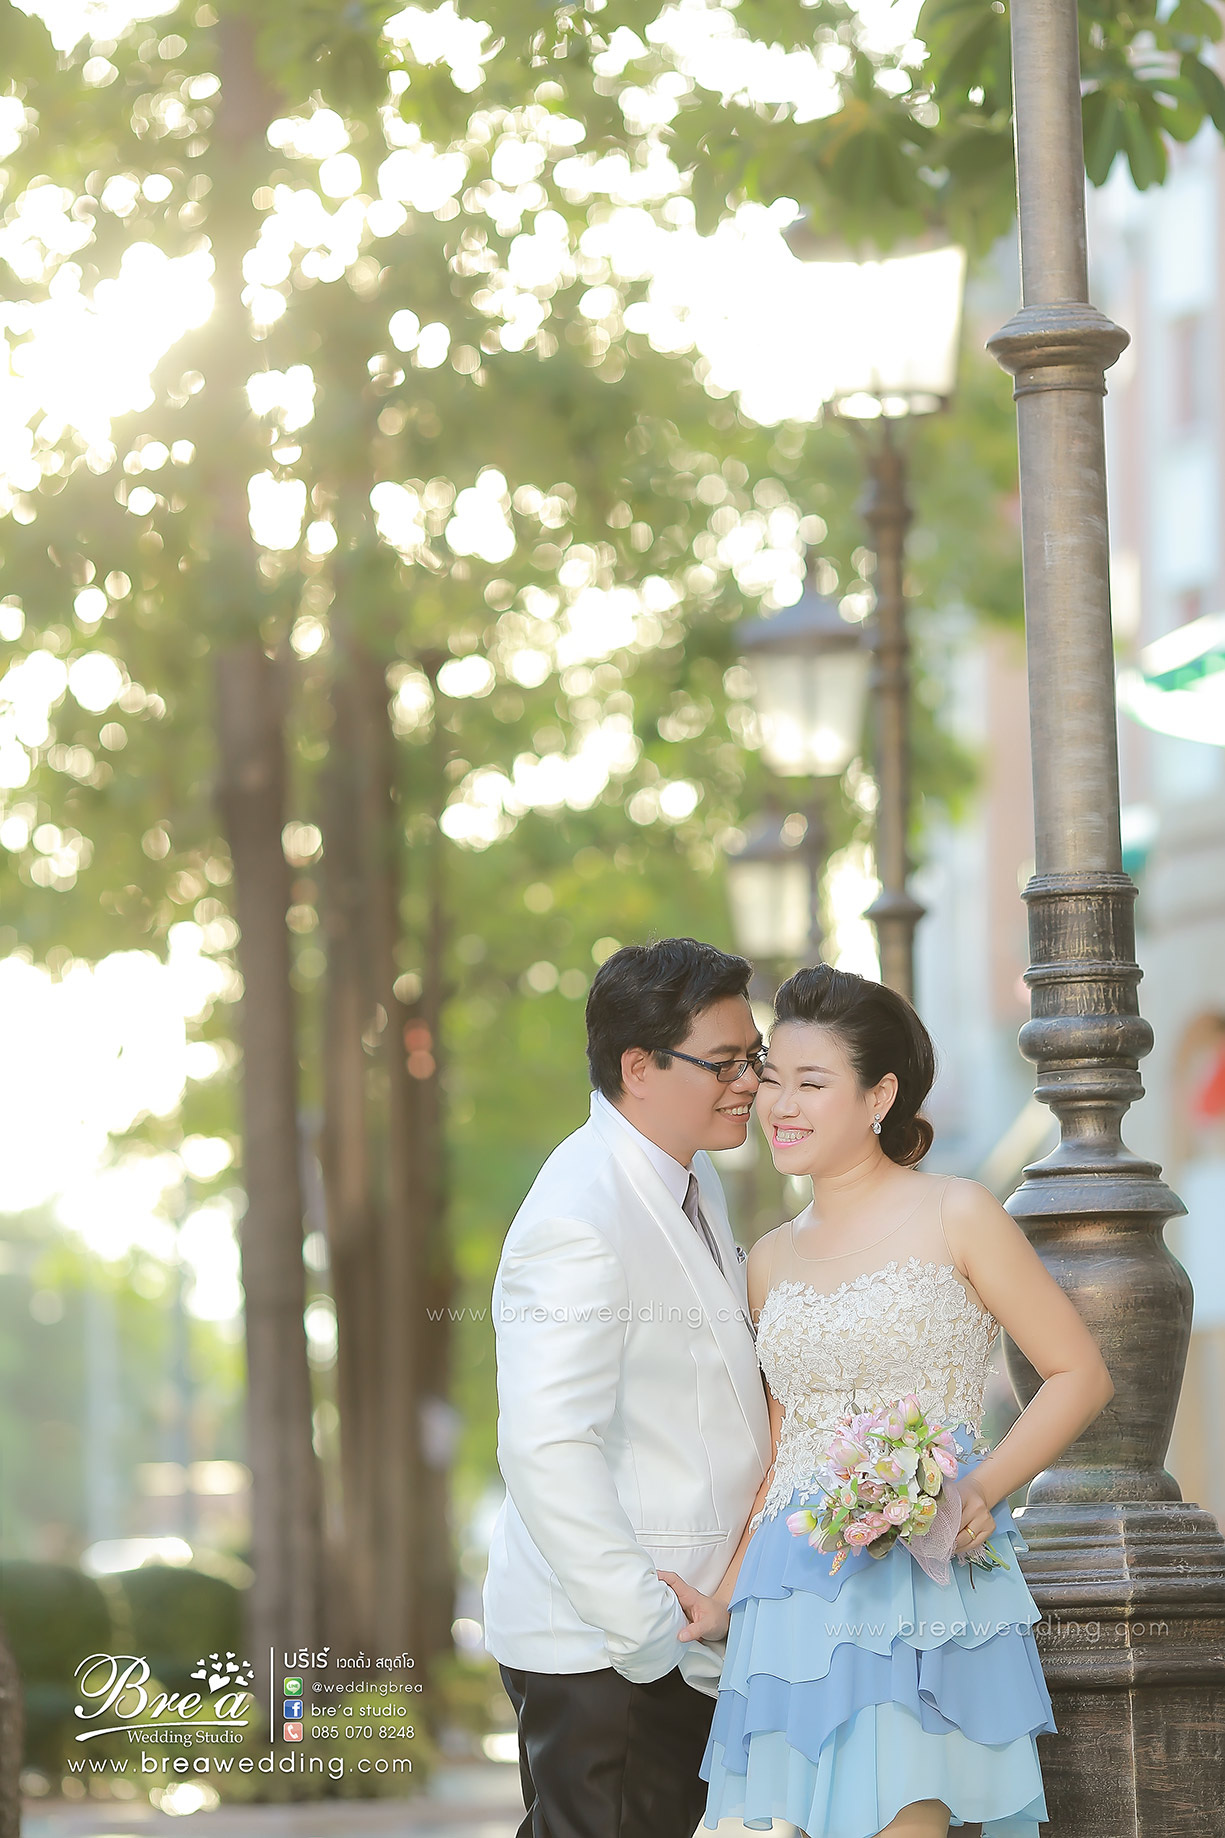 ถ่ายรูปแต่งงาน พรีเวดดิ้ง ชุดแต่งงาน นนทบุรี 